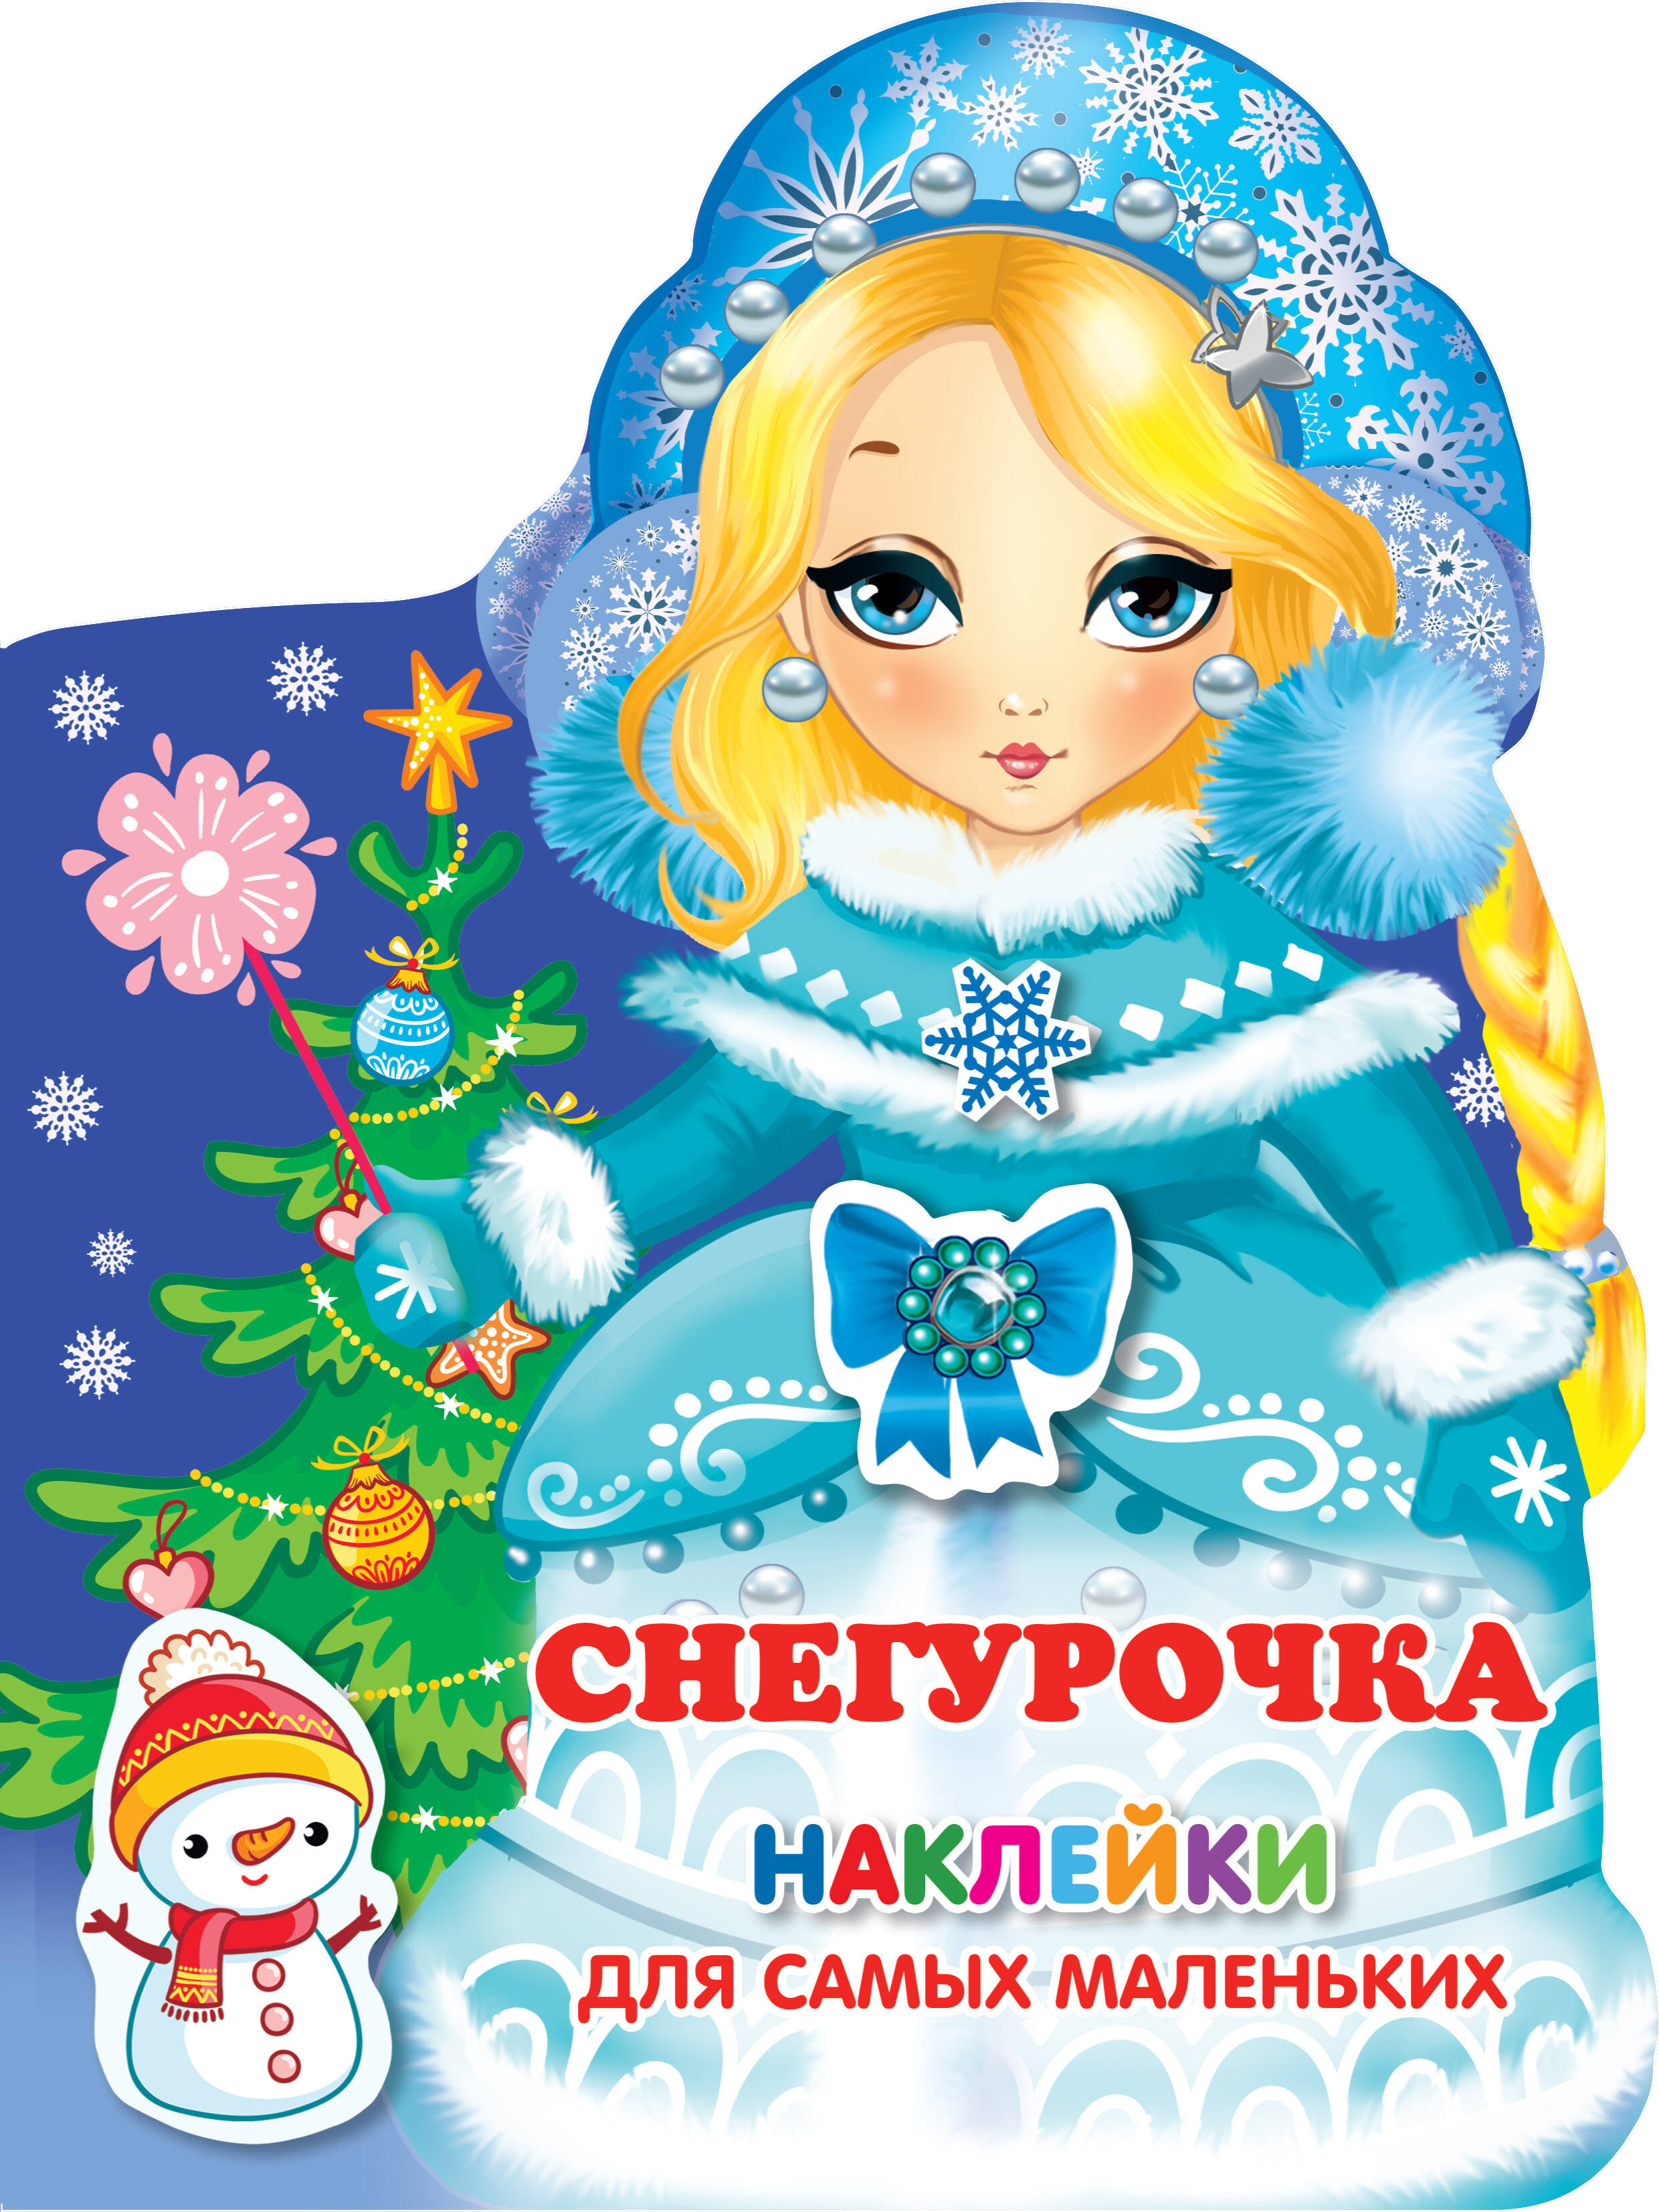 Наклейки для самых маленьких Снегурочка новогодний карнавал книжка плакат